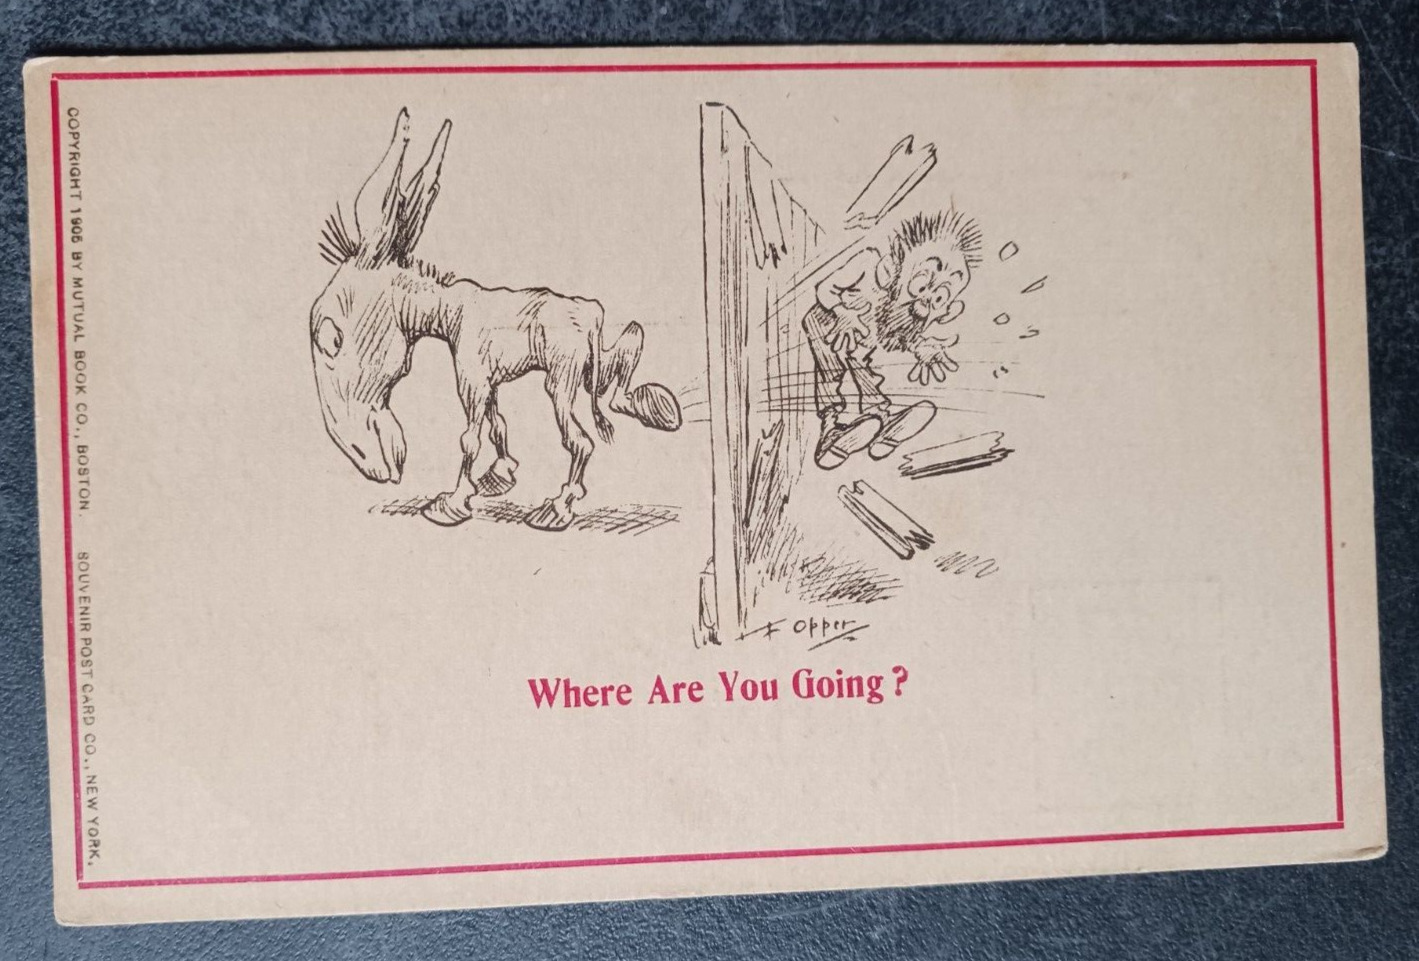 vtg postcard art  Kicking Donkey Where Are You Going? Humor F. Opper undivided